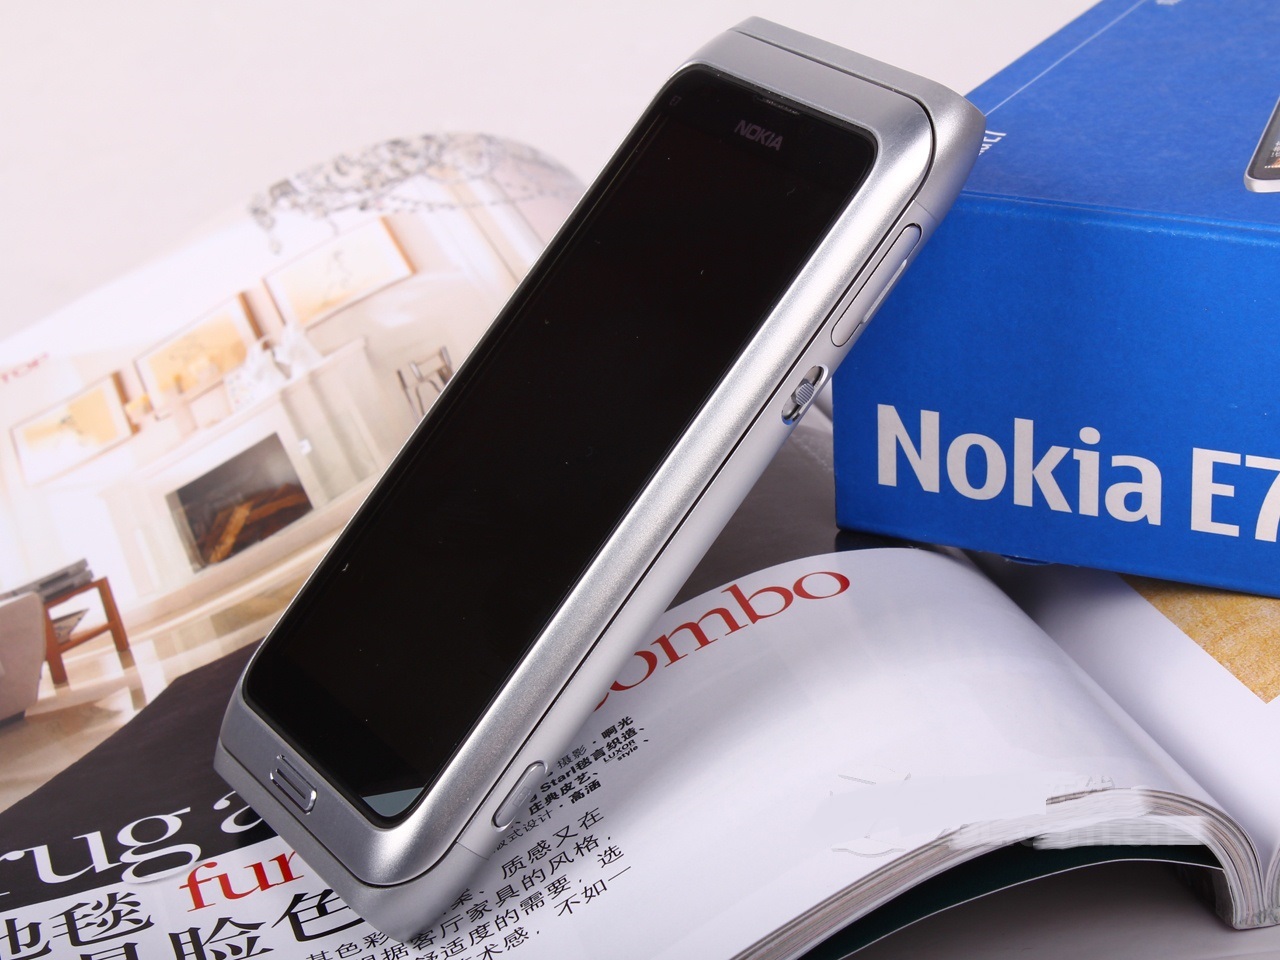 Nokia E7(e7)